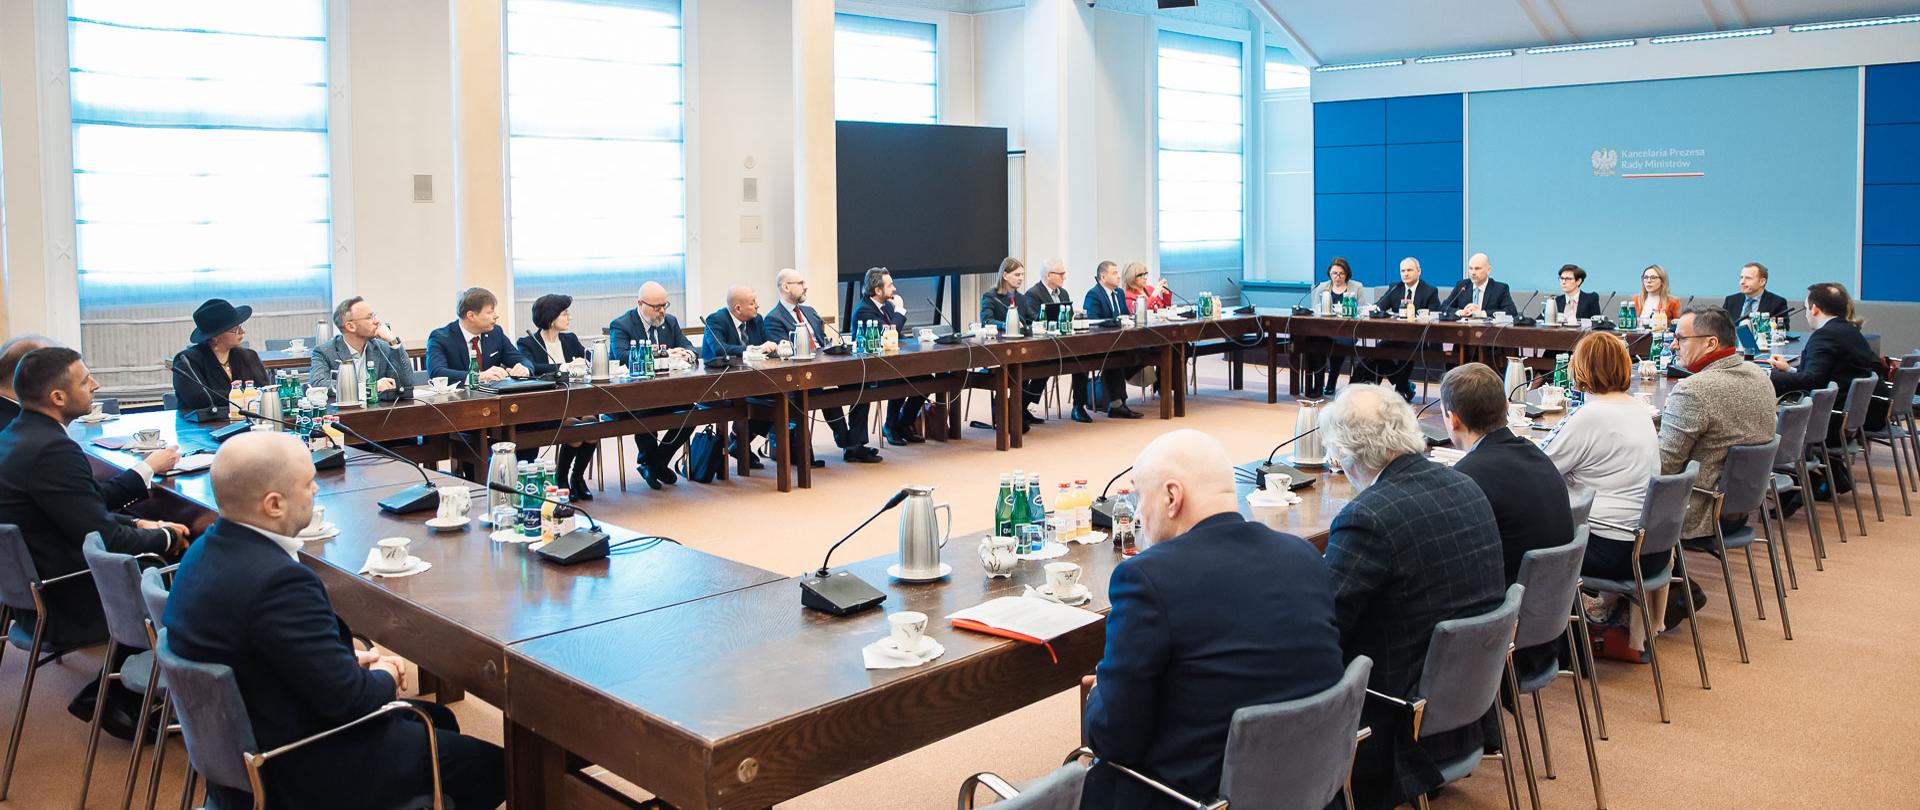 Minister, Przewodniczący Komitetu Stałego Rady Ministrów, Maciej Berek podczas spotkania z przedstawicielami samorządów zawodowych.